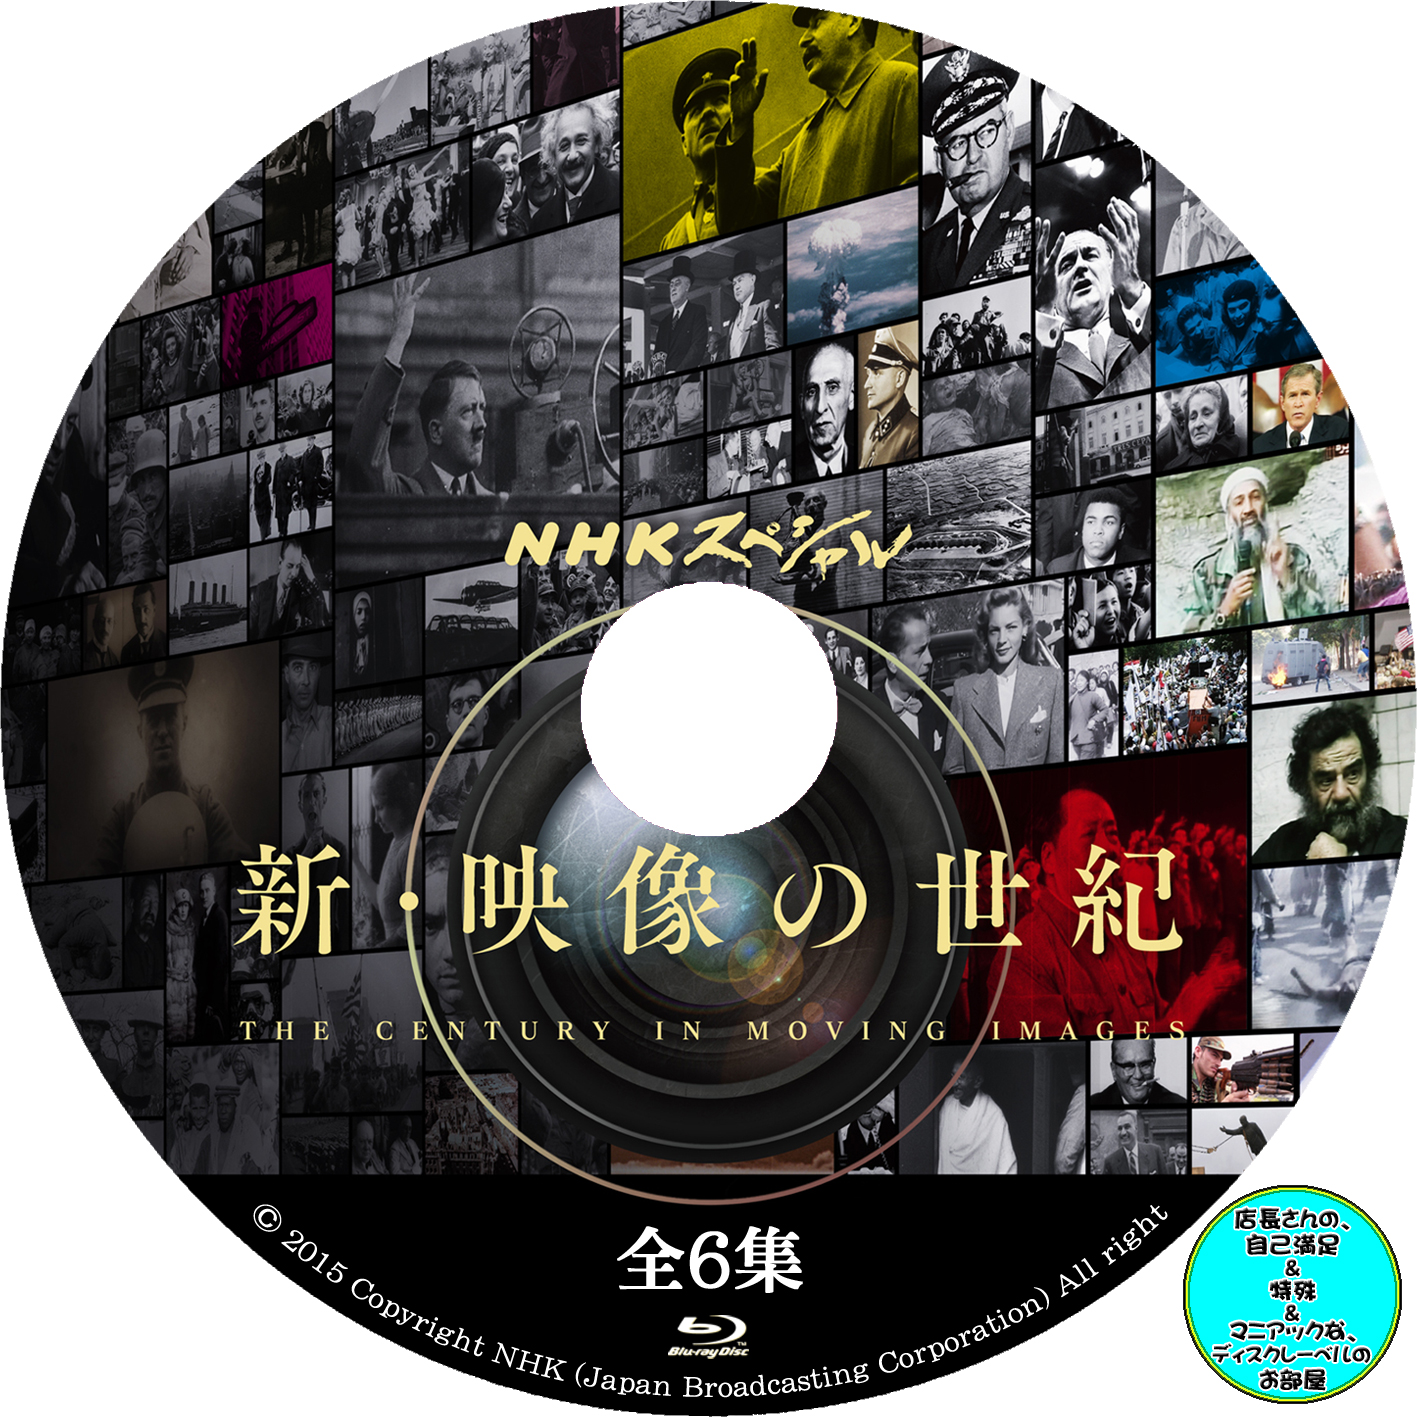 NHKスペシャル 新・映像の世紀 DVD-BOX〈7枚組〉CDDVD